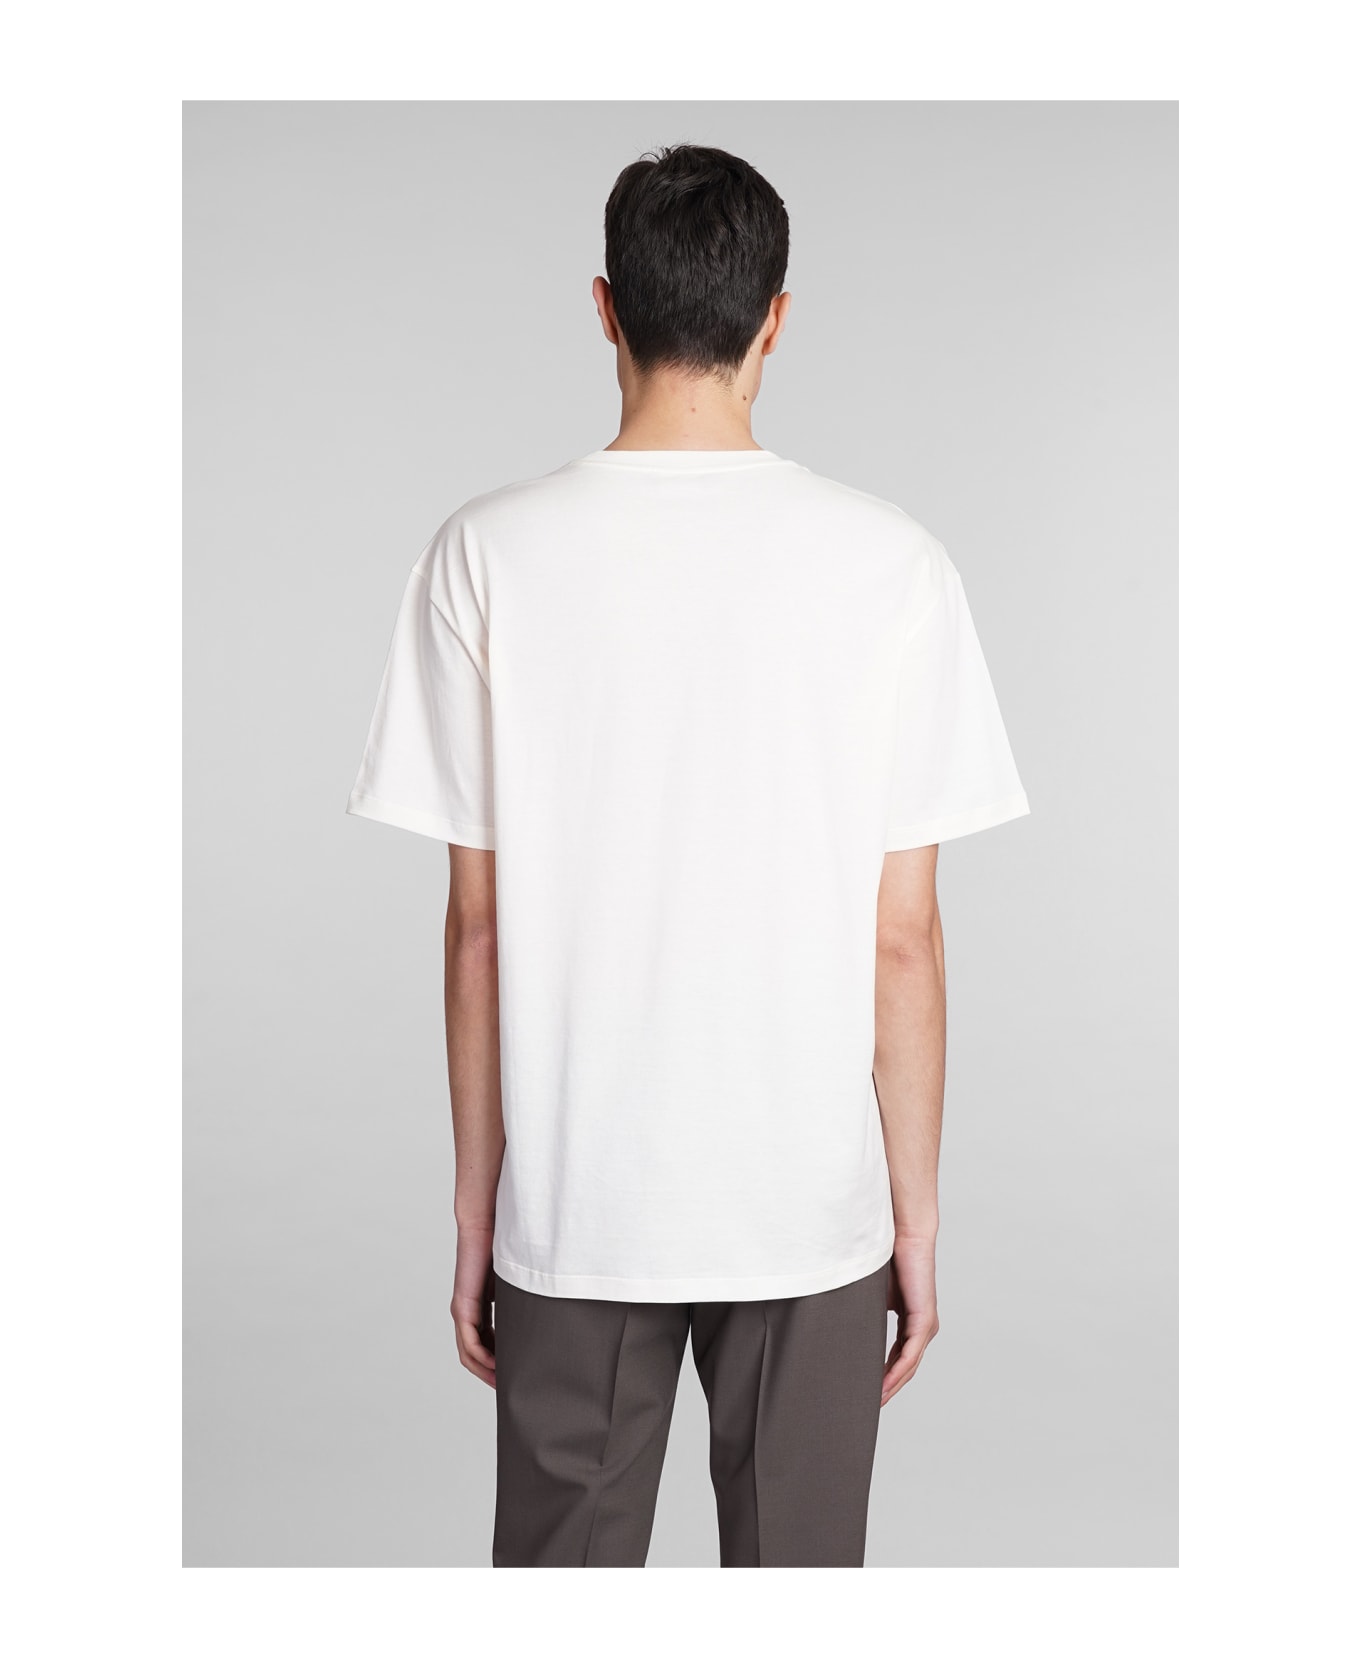 Roberto Collina T-shirt In Beige Cotton - beige シャツ